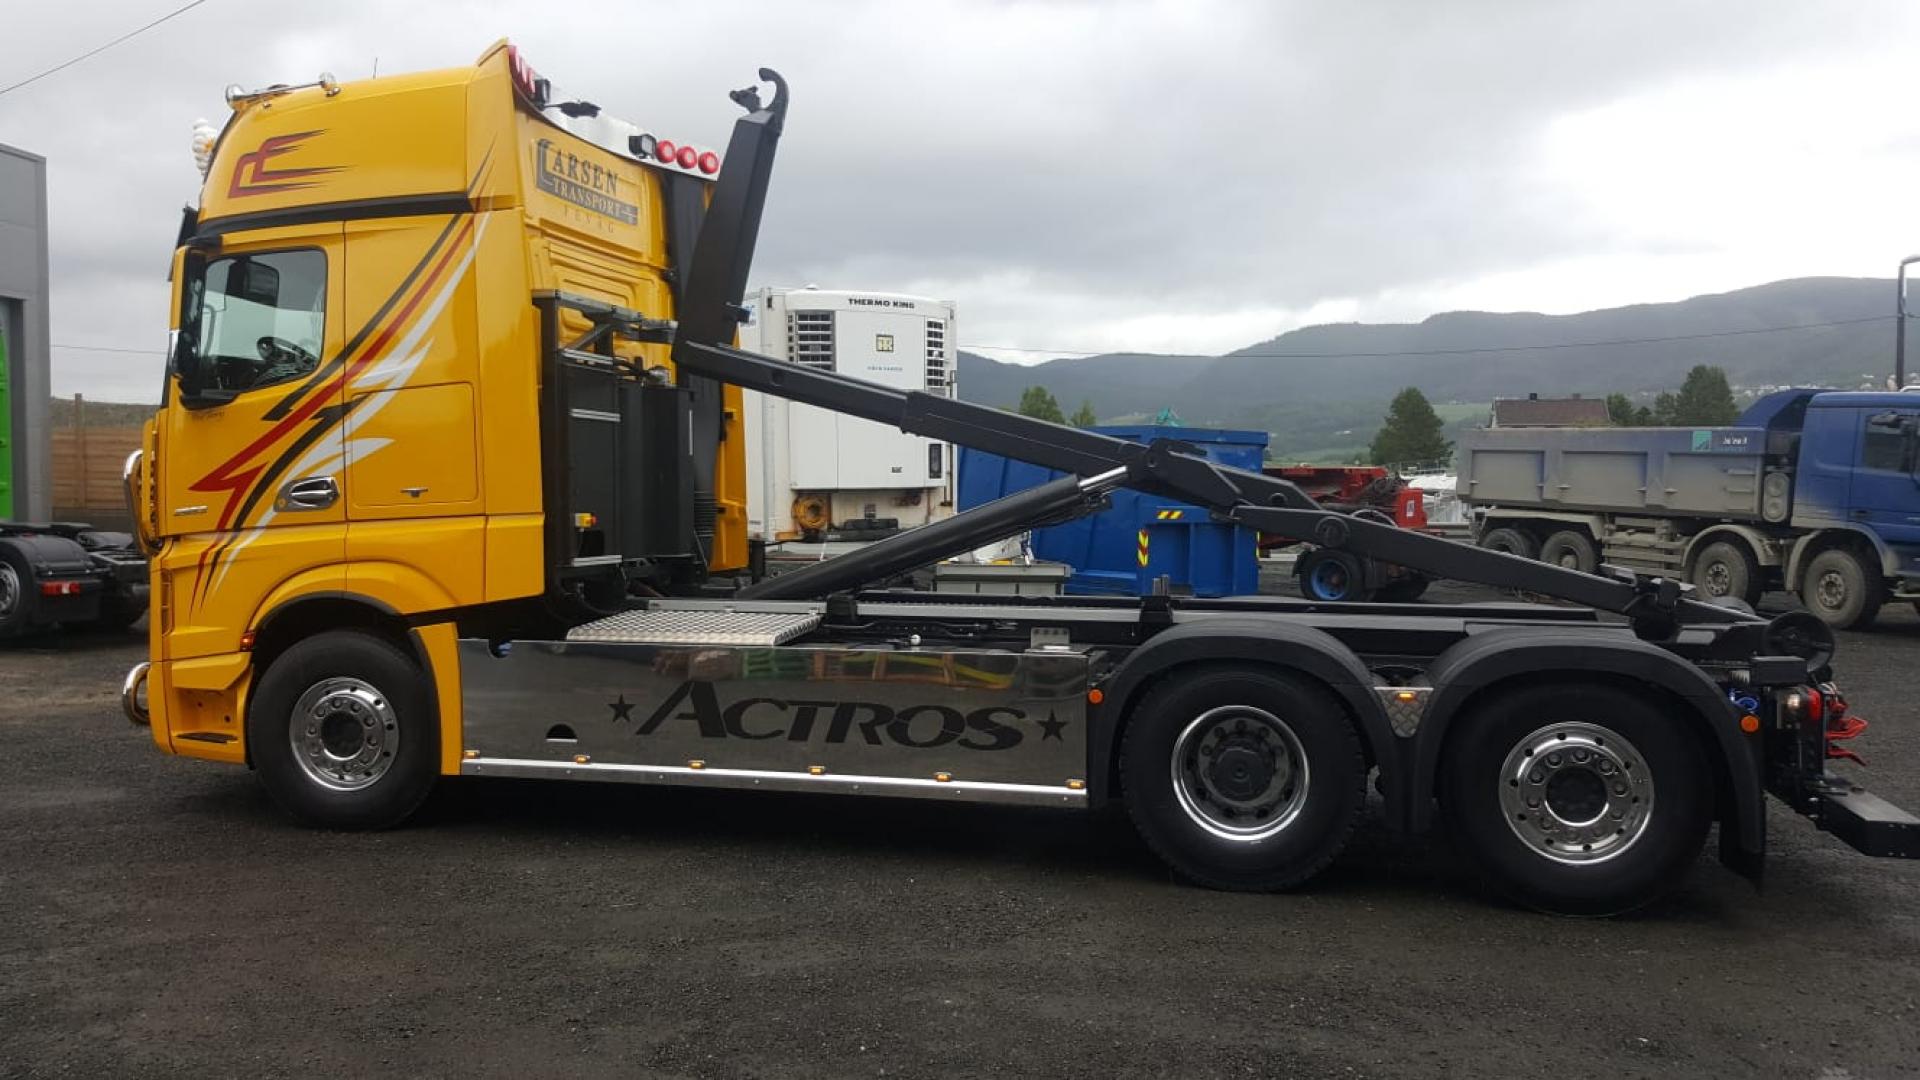 Mercedes truck met VDL opbouw geleverd in Noorwegen